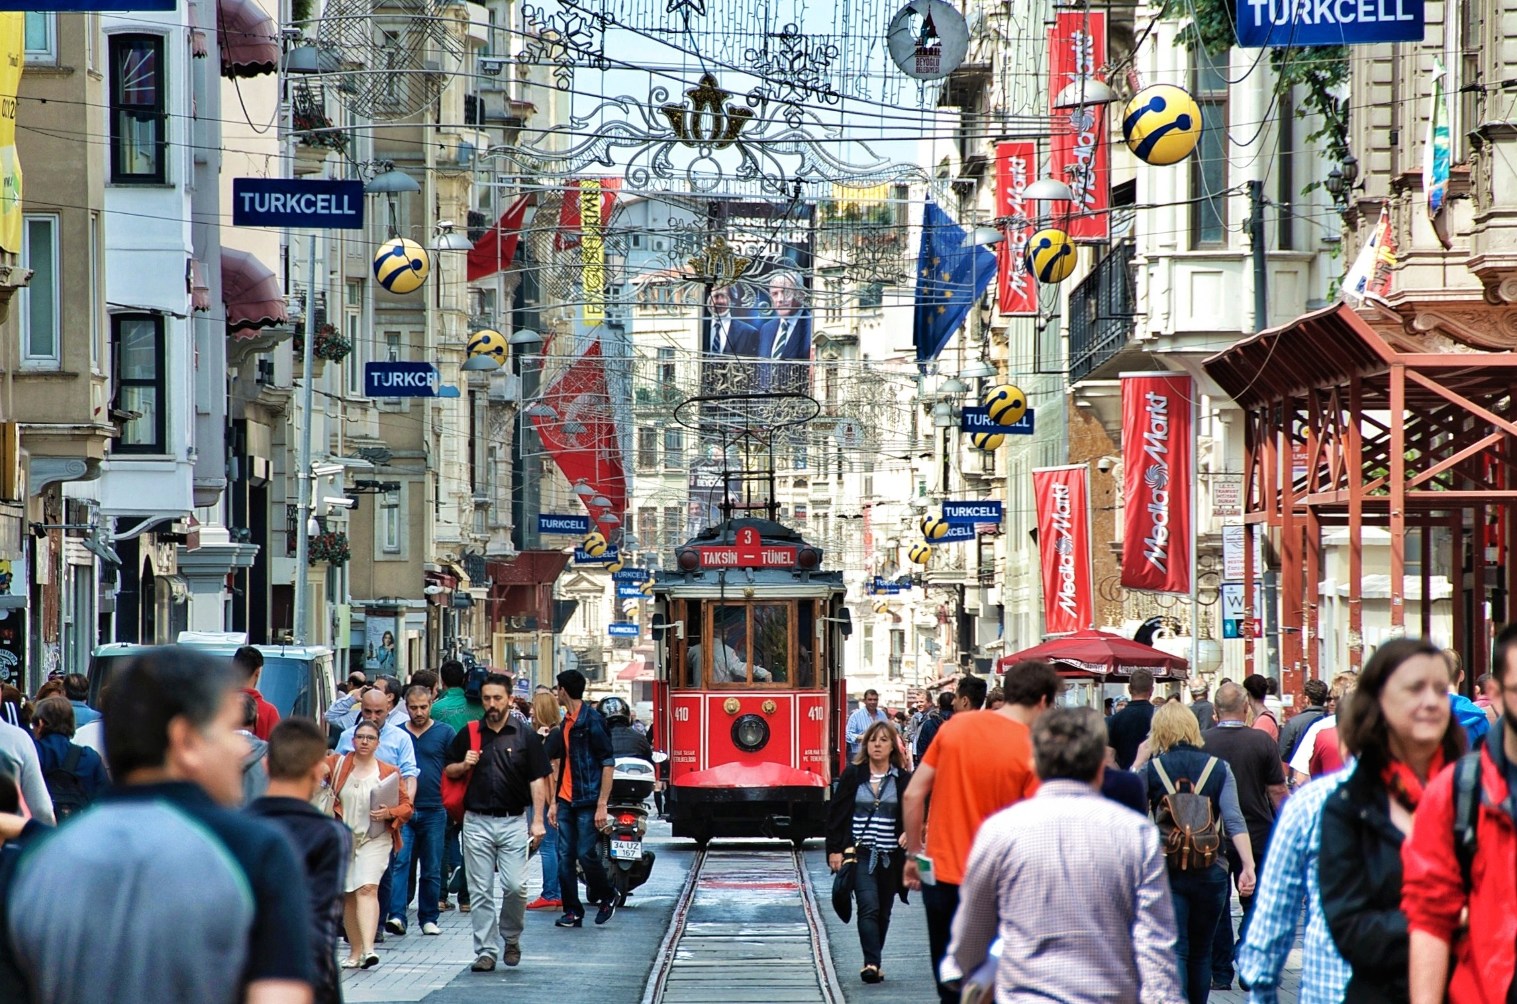 Истикляль. Истикляль Стамбул. Площадь Таксим и улица Истикляль. Улица Истикляль, Стамбул, Турция. Площадь Истикляль в Стамбуле.